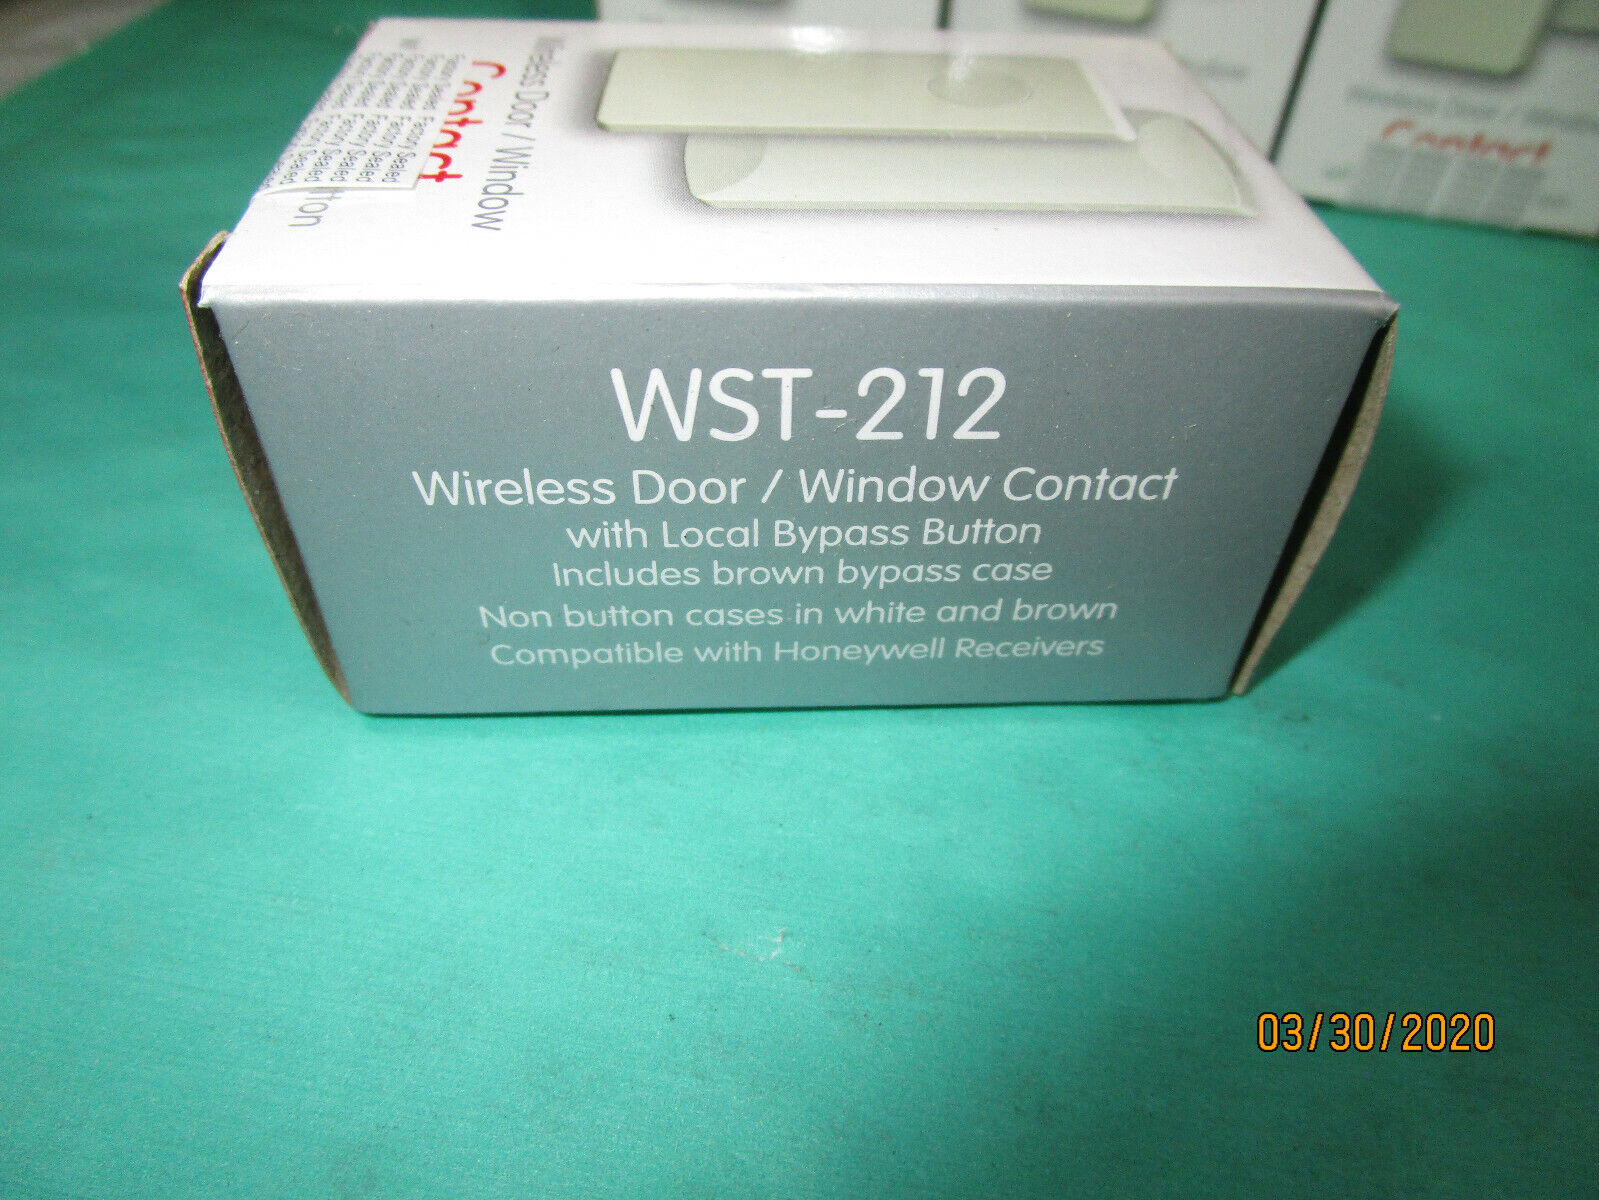 Lot of 5 Ecolink WST-212 Honeywell Compatible Wireless Door/Window Sensors Ecolink WST-212 - фотография #2